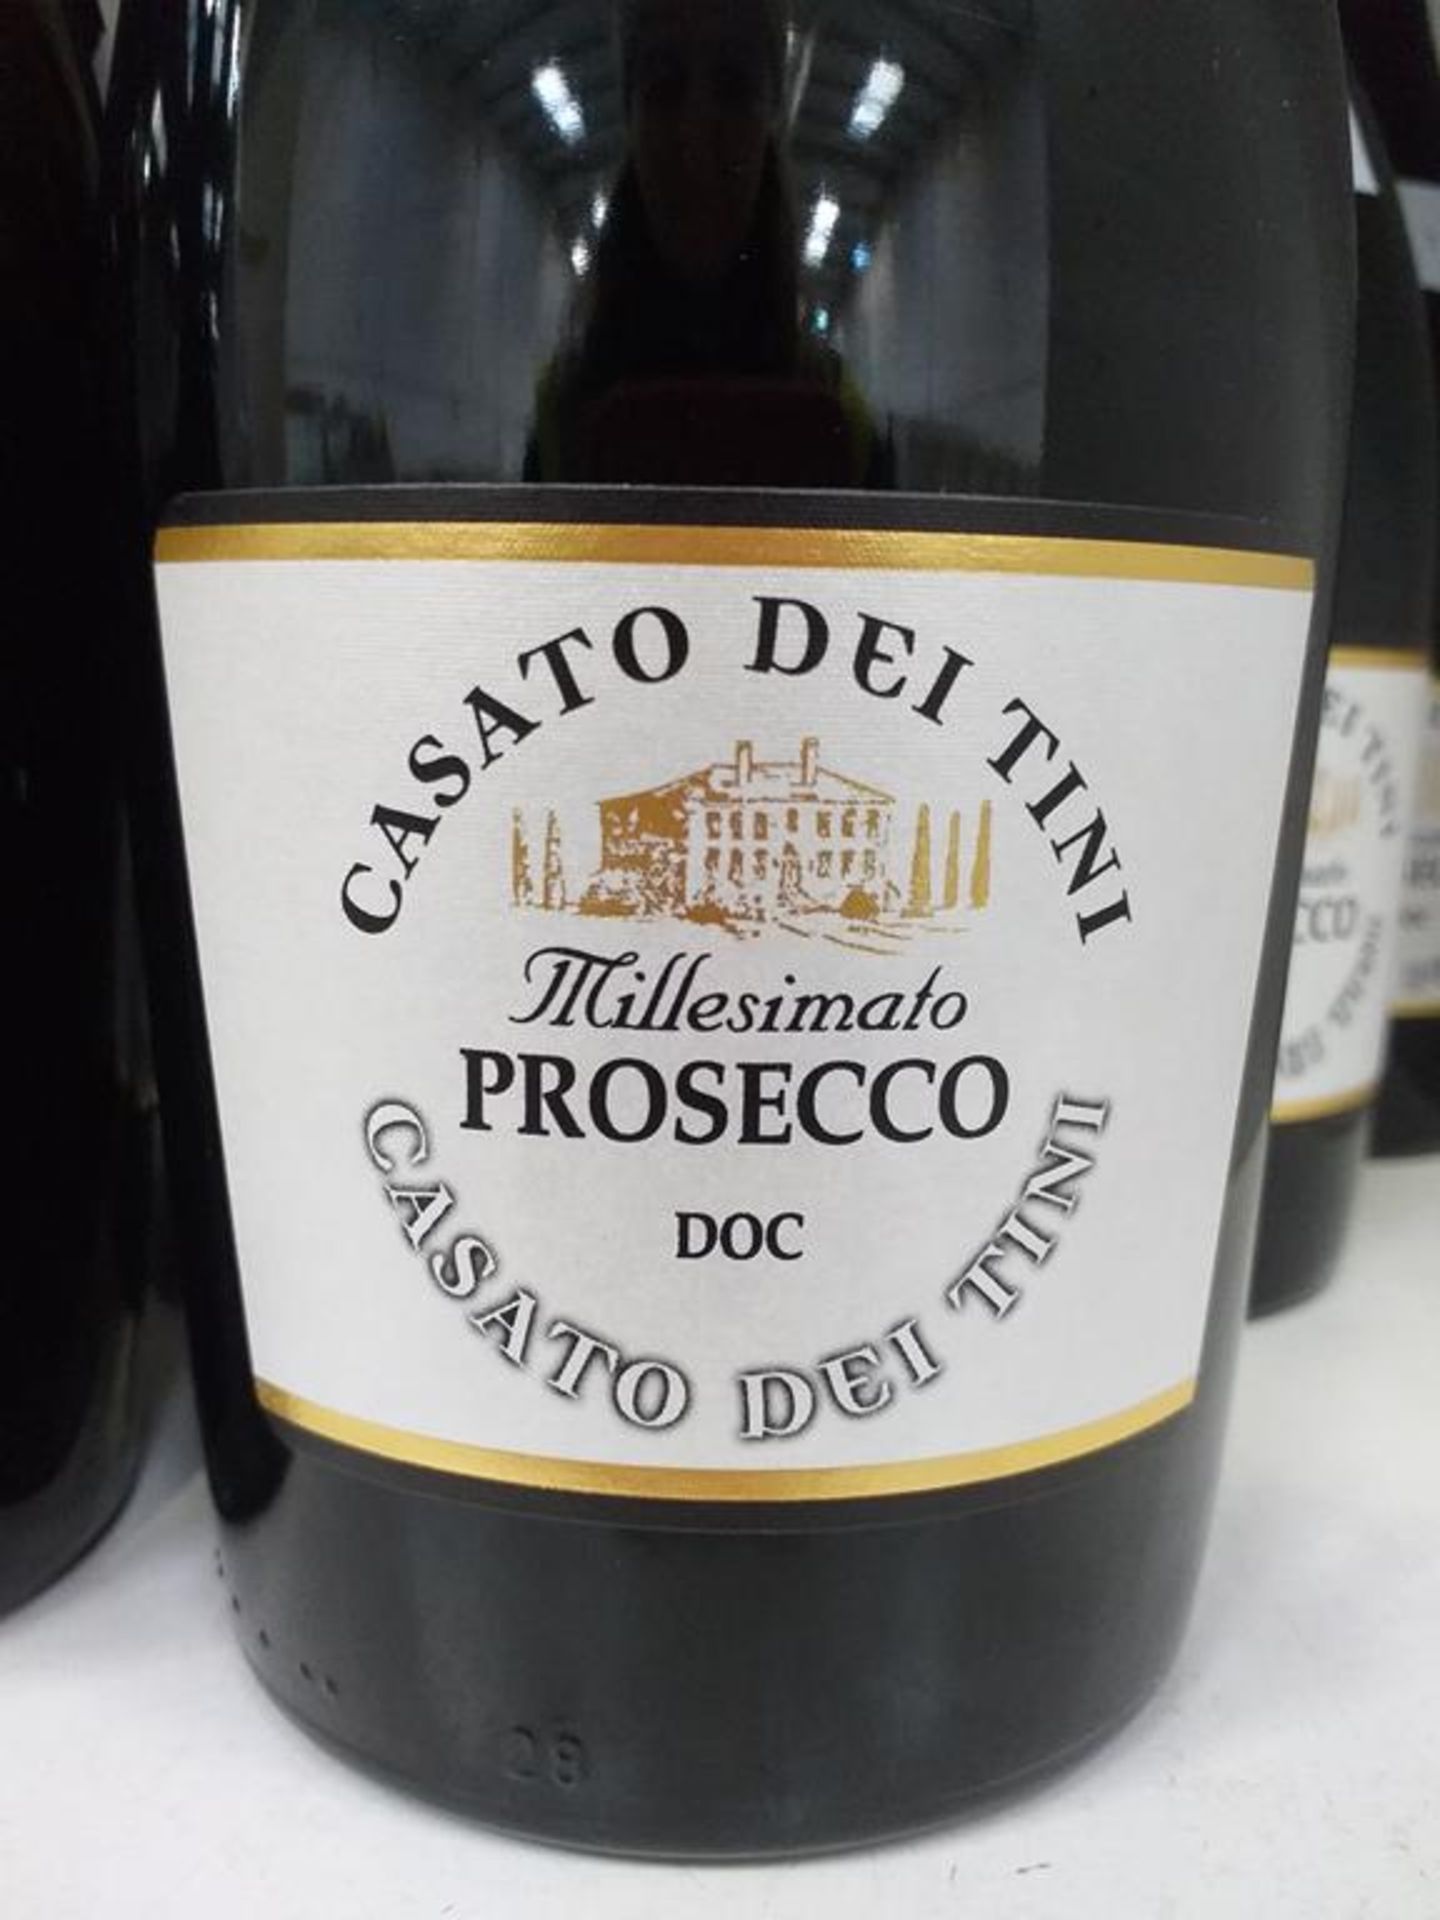 Three bottles of Martini Prosecco D.O.C. and nine bottles of Casato Dei Tini Millesimato Prosecco D. - Image 6 of 7